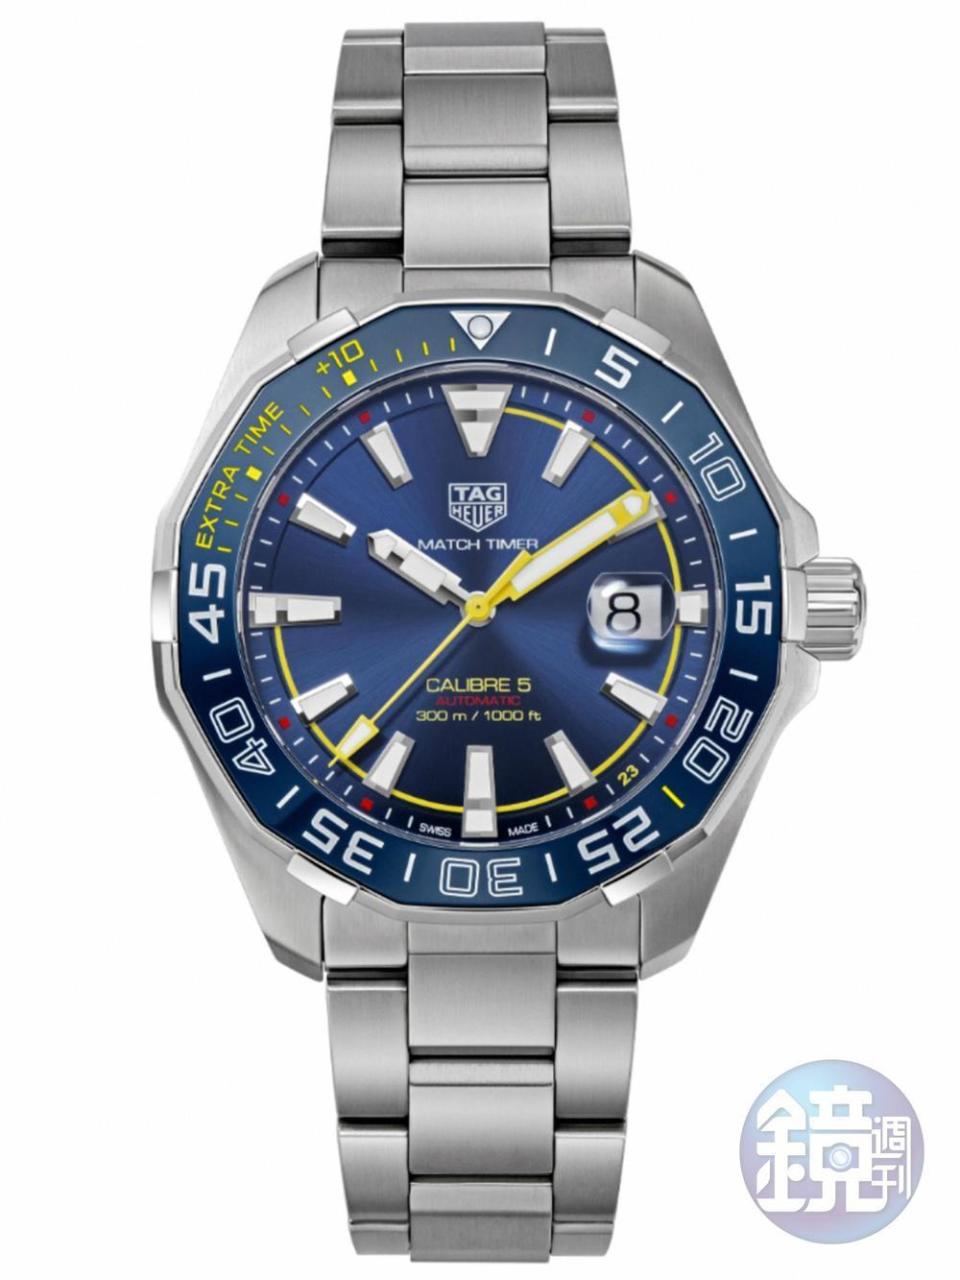 這是TAG HEUER推出的香川真司特別版，以300米潛水錶為基礎，但錶圈改成足球賽計時，售價約295,000日円。